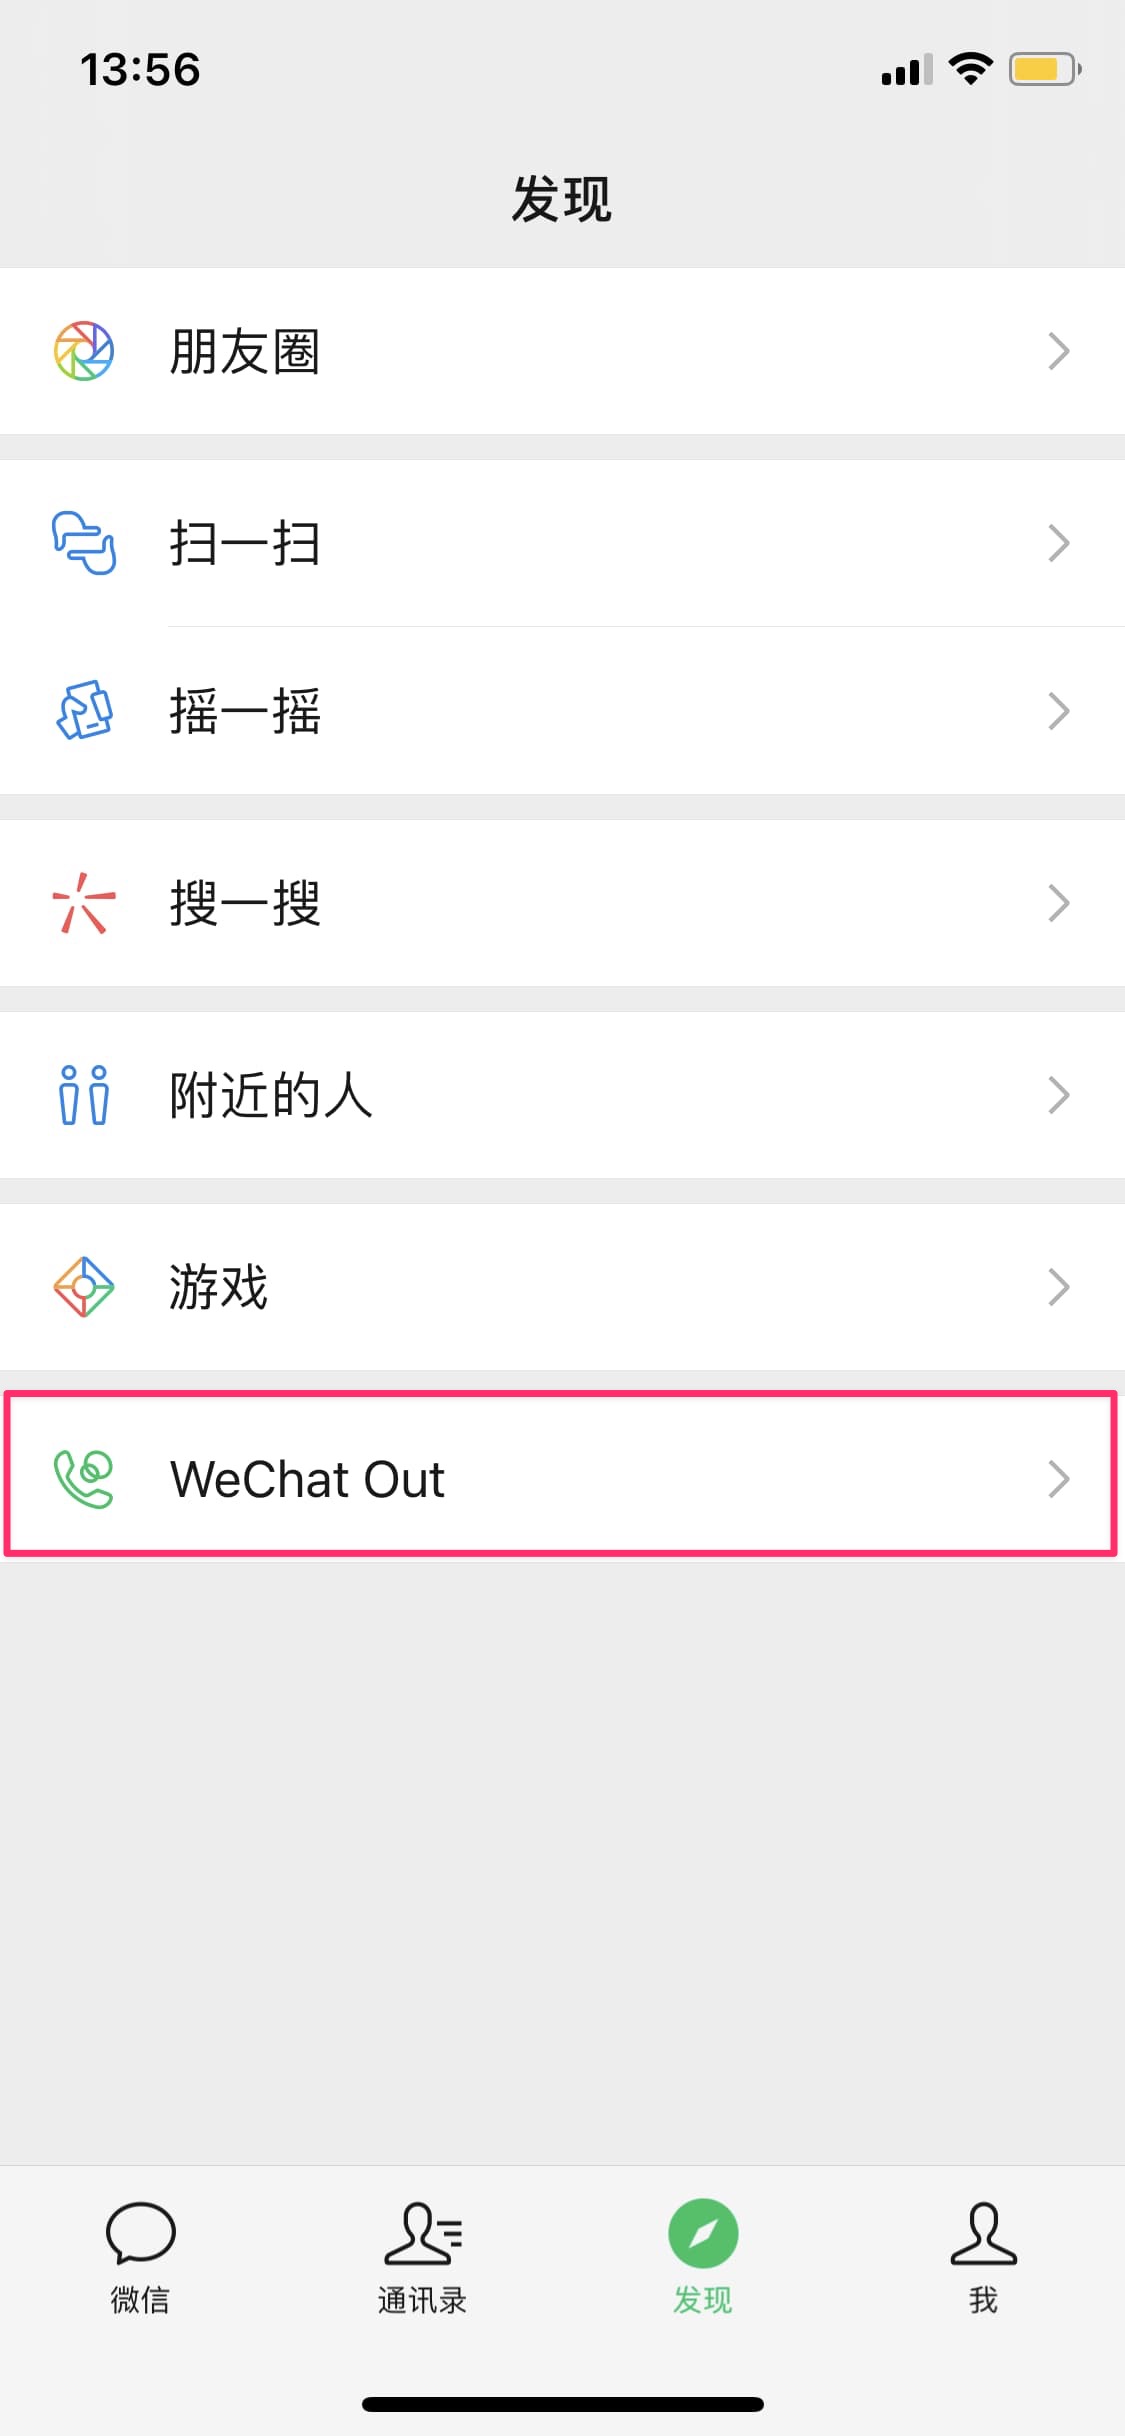 注册 WeChat 成功，WeChat Out 成功启用